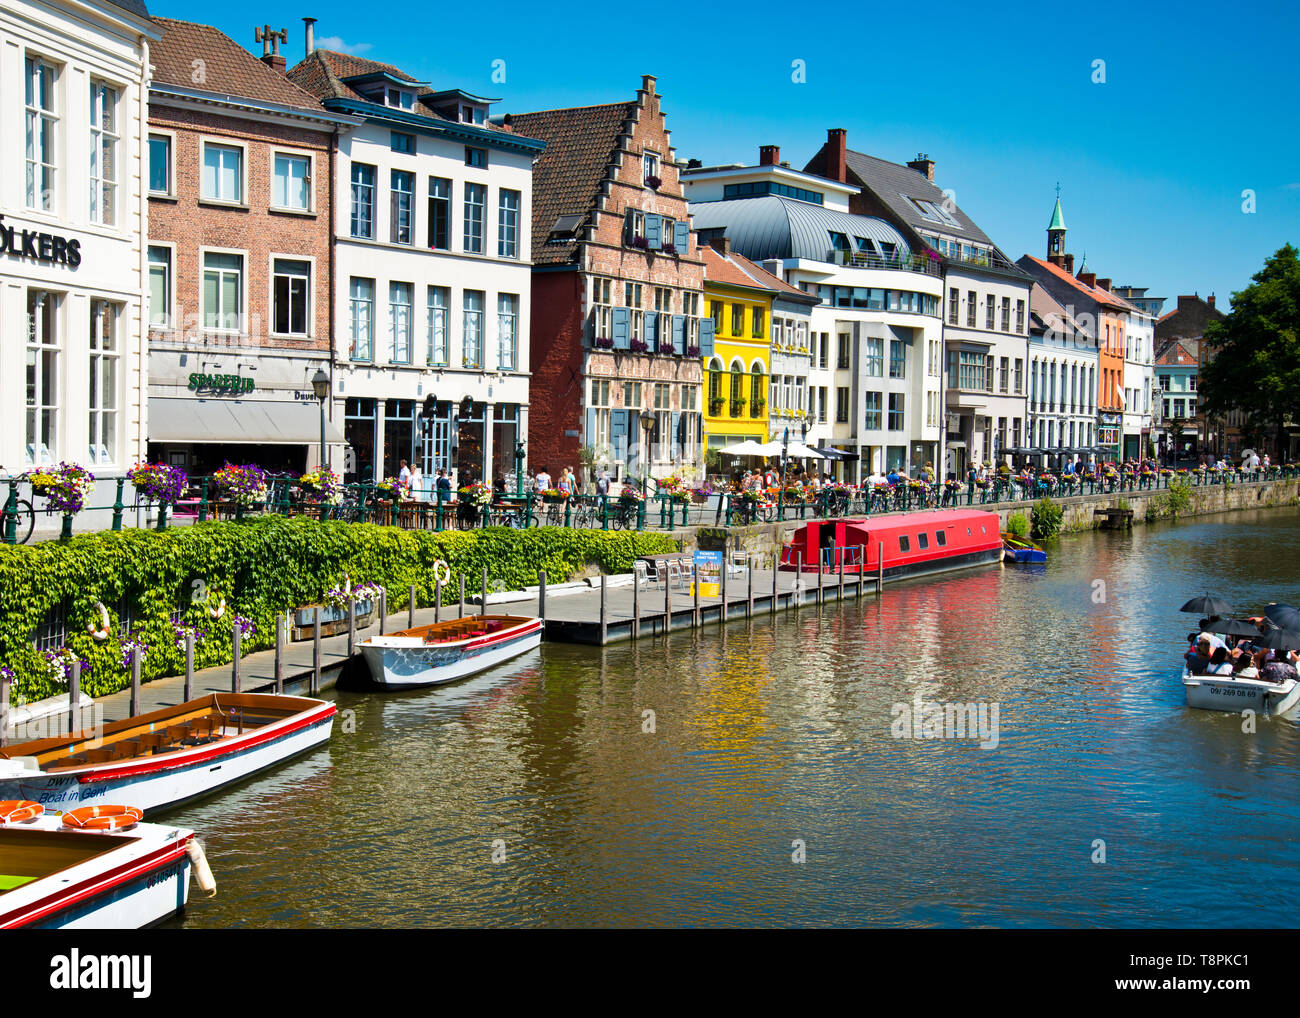 El banco del canal en Gante está lleno de barcos, cafeterías y bares llenos de gente socializando juntos, en un cálido día de verano viendo pasar excursiones en barco. Foto de stock